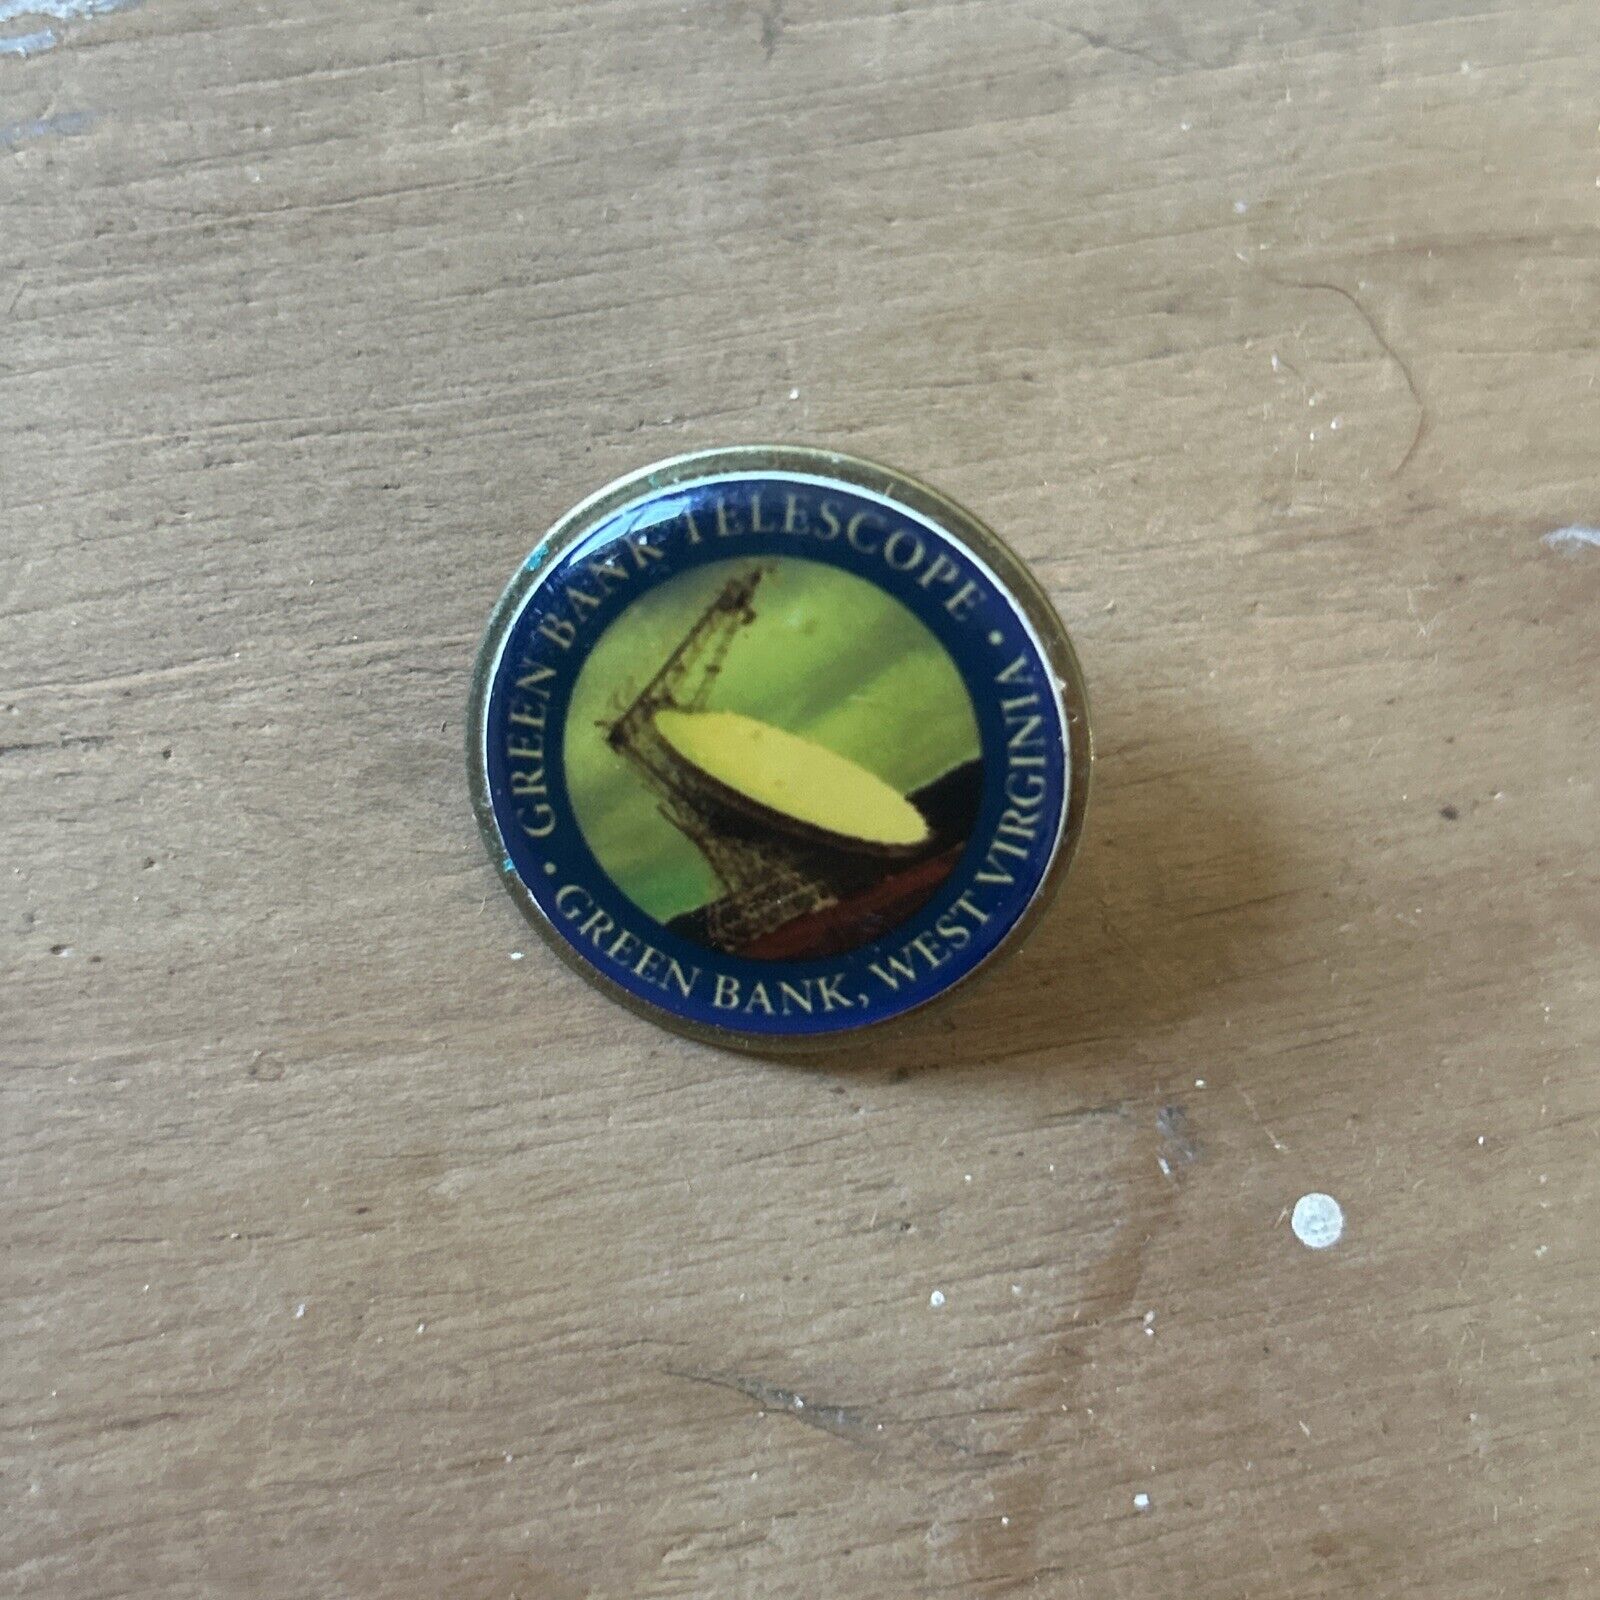 Green Bank Telescope West Virginia Collectible Enamel Pin Badge